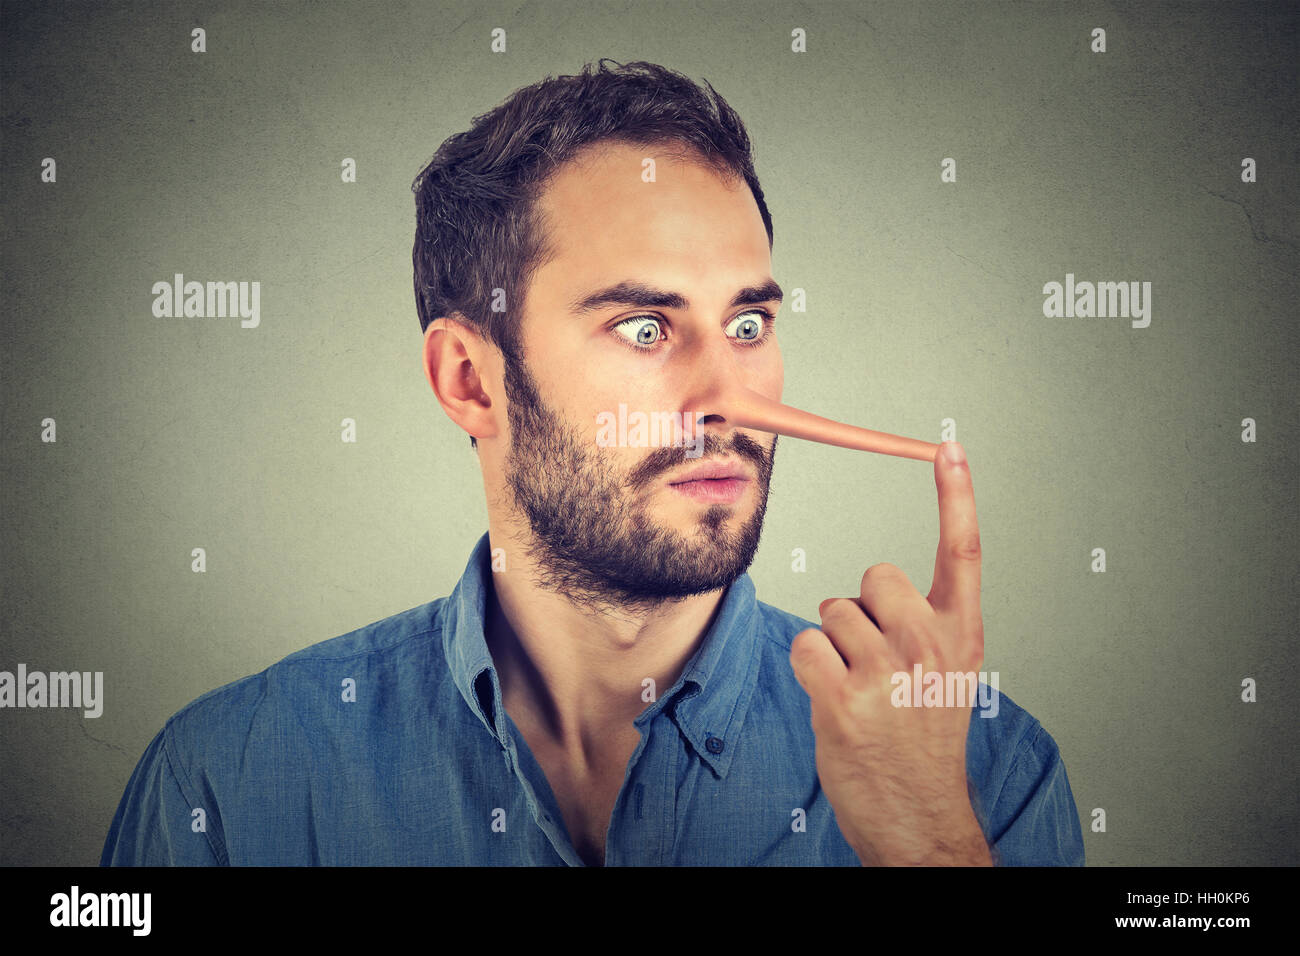 Mann mit langer Nase auf graue Wand Hintergrund isoliert. Lügner-Konzept. Menschlichen Gesichtsausdruck, Emotionen, Gefühle. Stockfoto